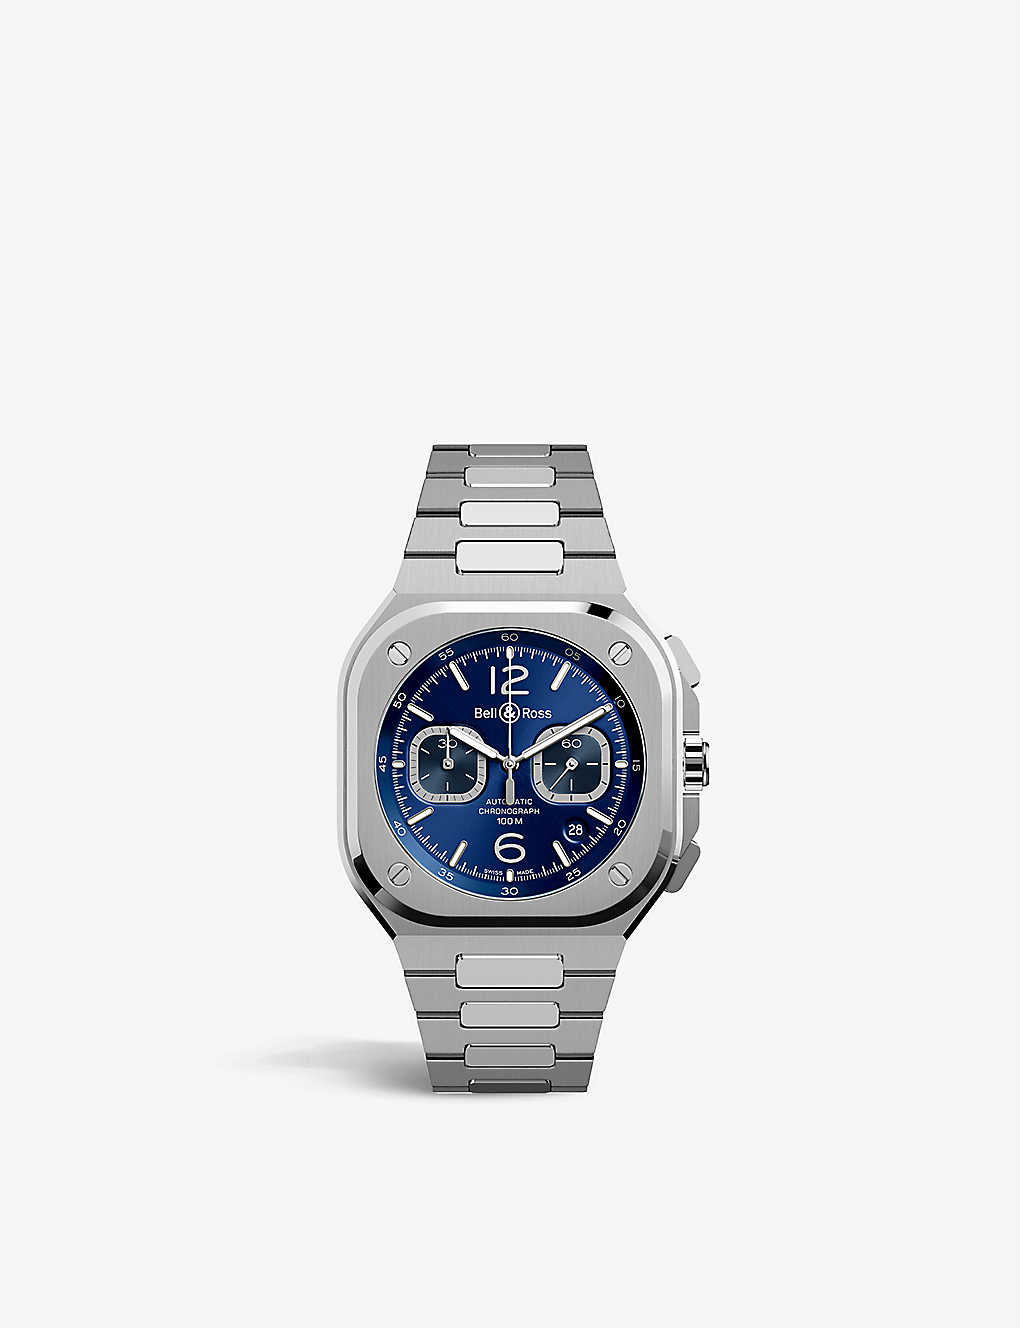 Bell & Ross Men's Blue Br05c-bu-st/sst Stainless Steel Watch